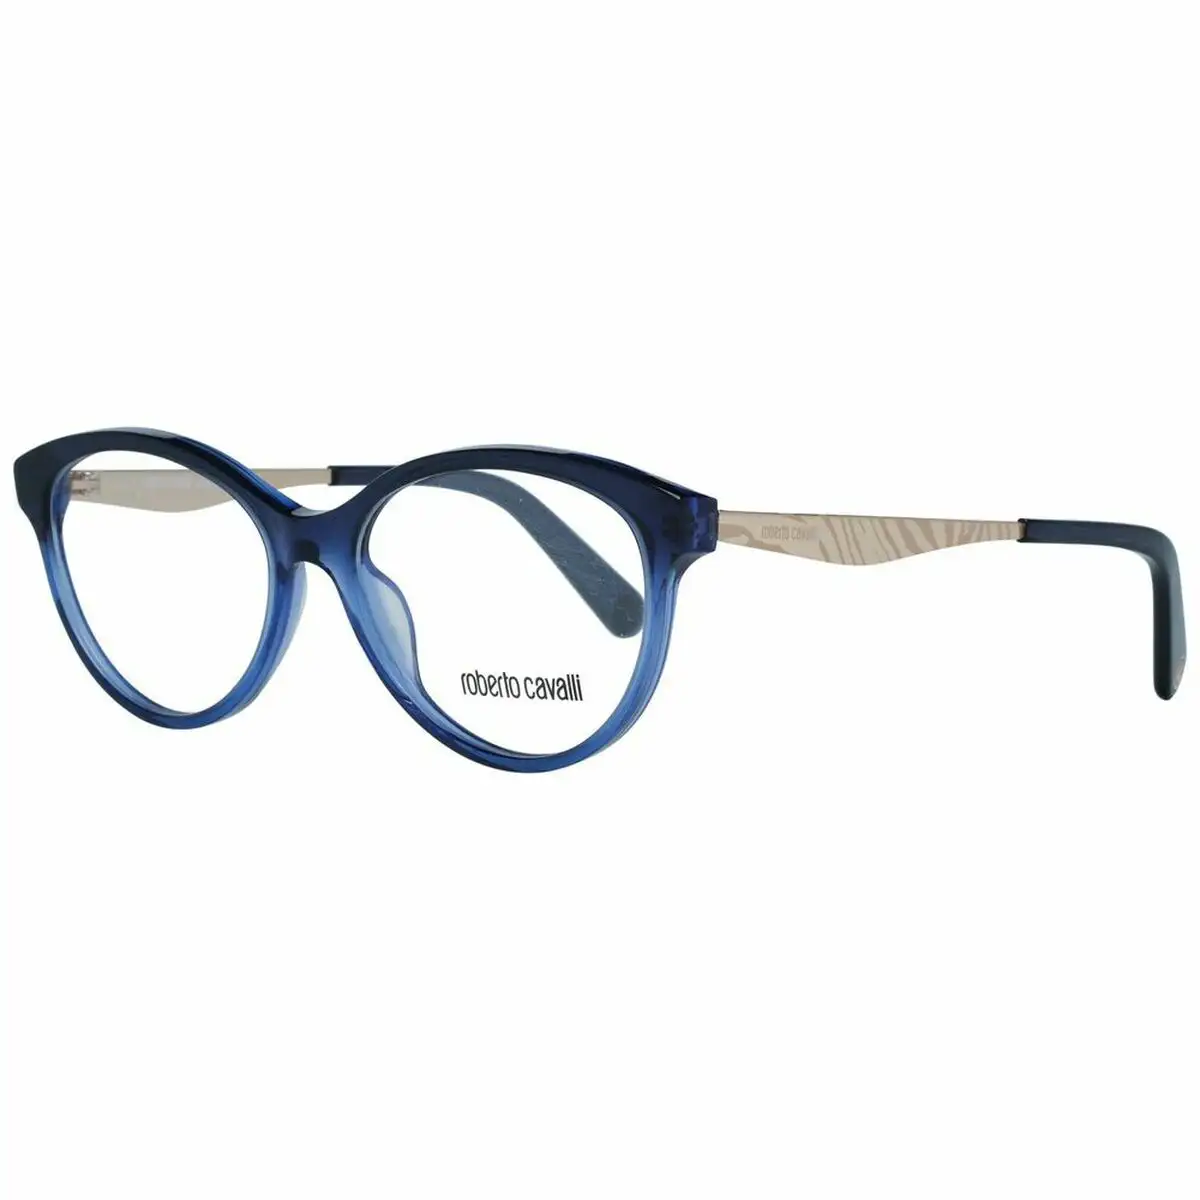 Monture de lunettes femme roberto cavalli rc5094 51092 bleu o 51 mm _5507. DIAYTAR SENEGAL - Votre Passage vers l'Éclat et la Beauté. Explorez notre boutique en ligne et trouvez des produits qui subliment votre apparence et votre espace.